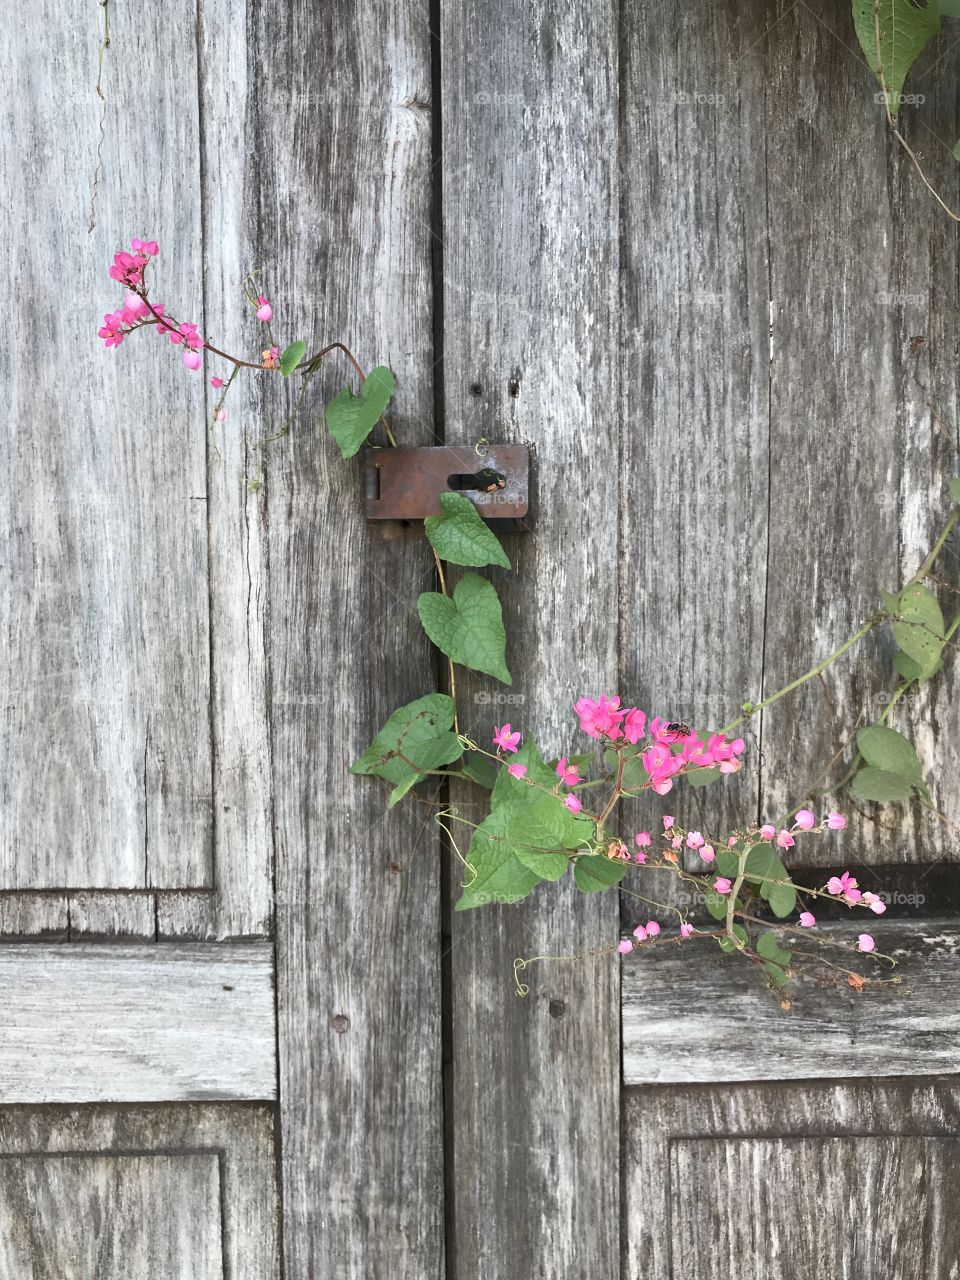 Old wooden door with pink flower